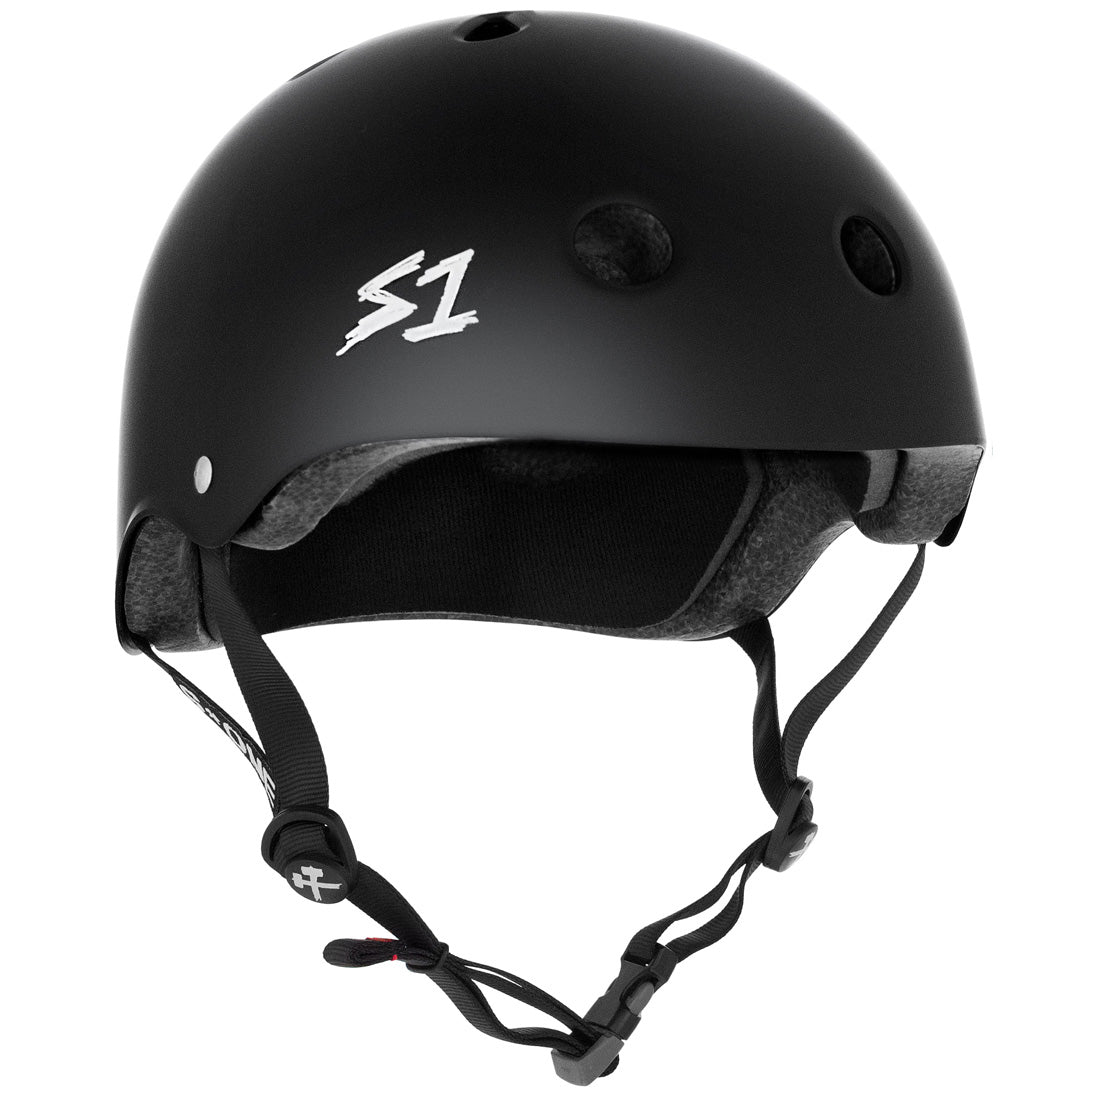 S-One Mega Lifer Helmet - Black Matte Helmets